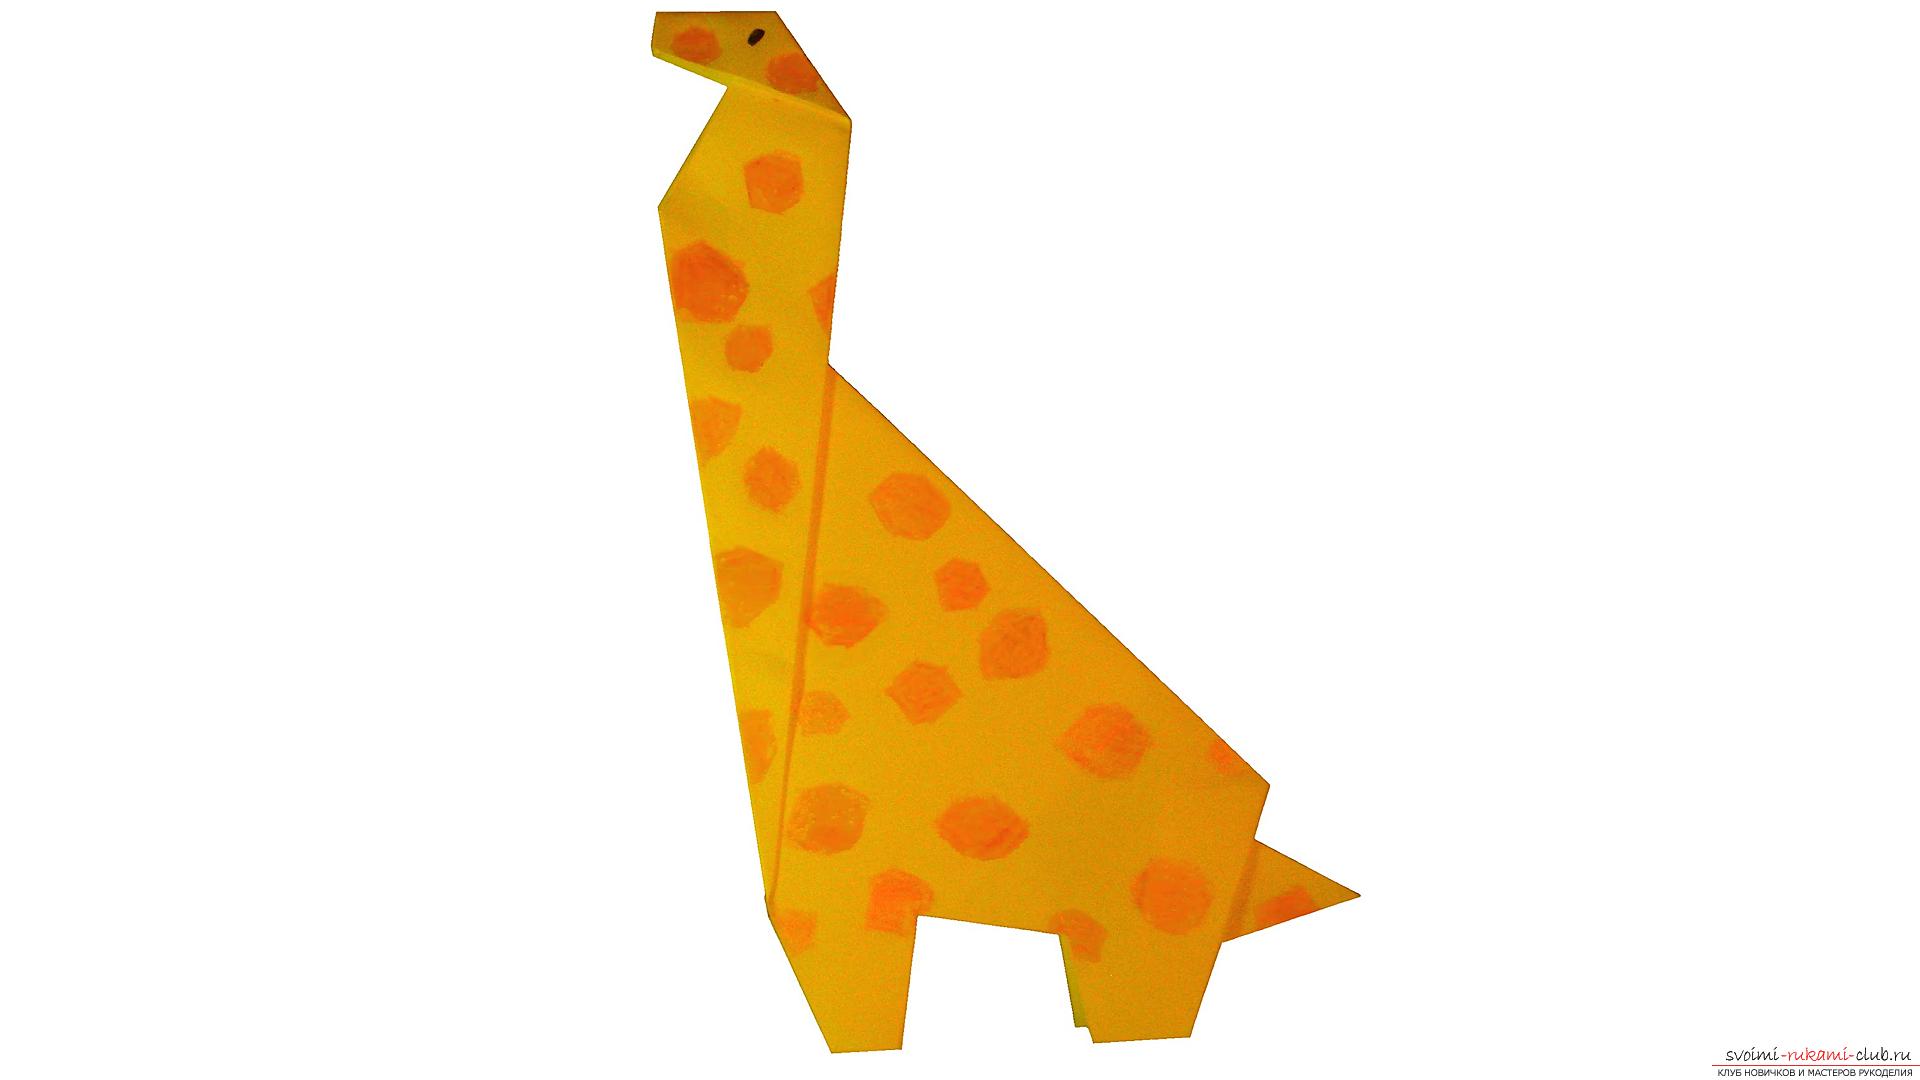 Как сделать жирафа в технике оригами из бумаги, вы узнаете из материала этой статьи